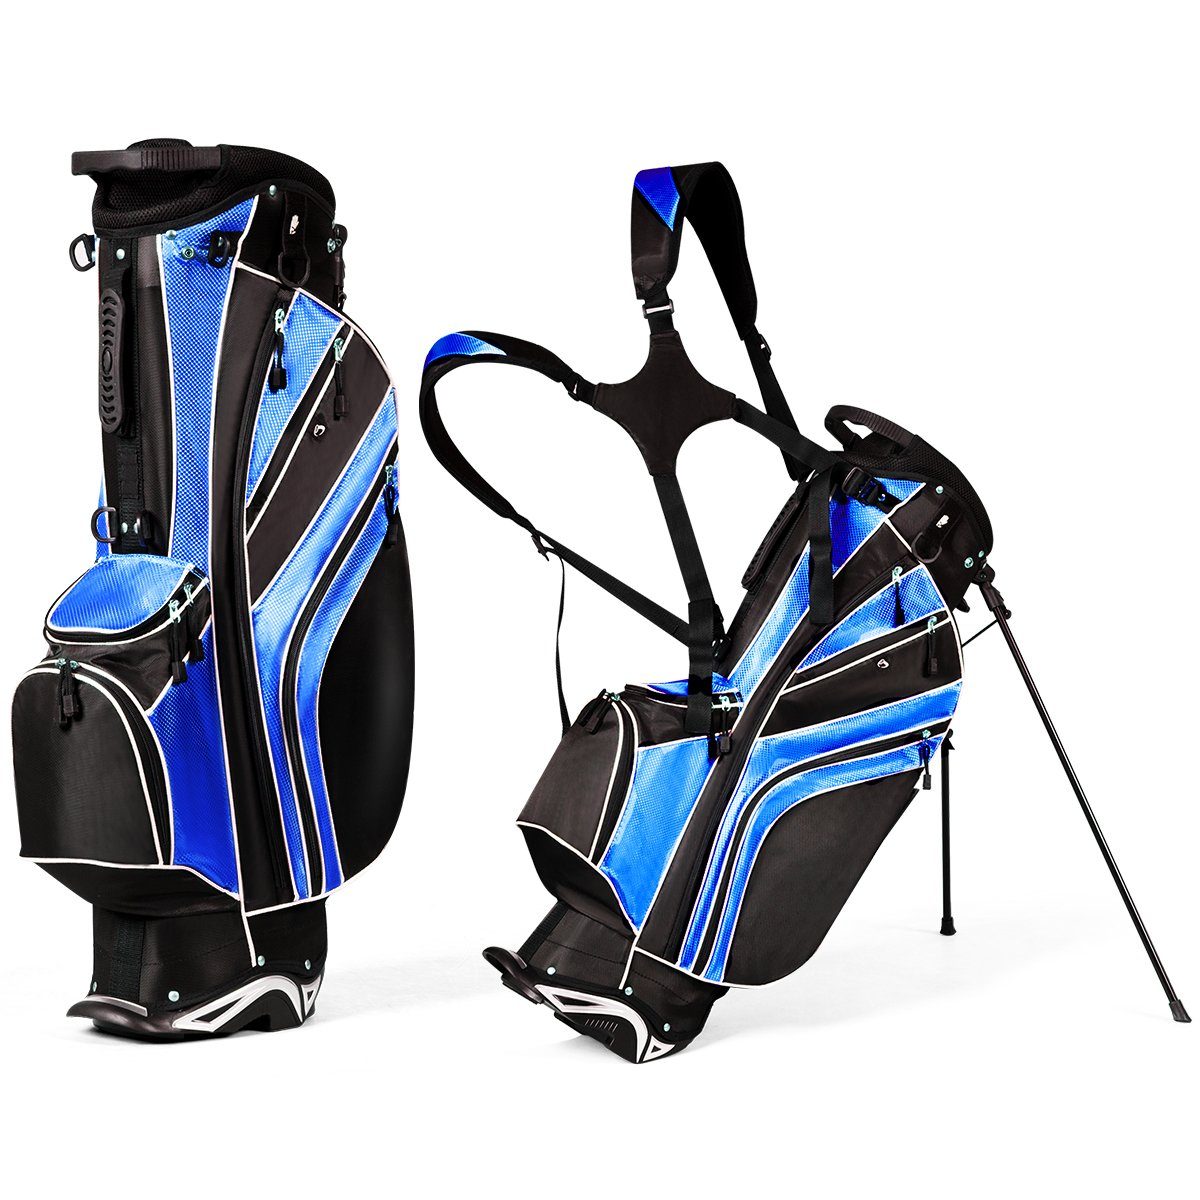 COSTWAY Golftrolley + Golfbag, mit Ständer, Regenschirmhalter blau+schwarz